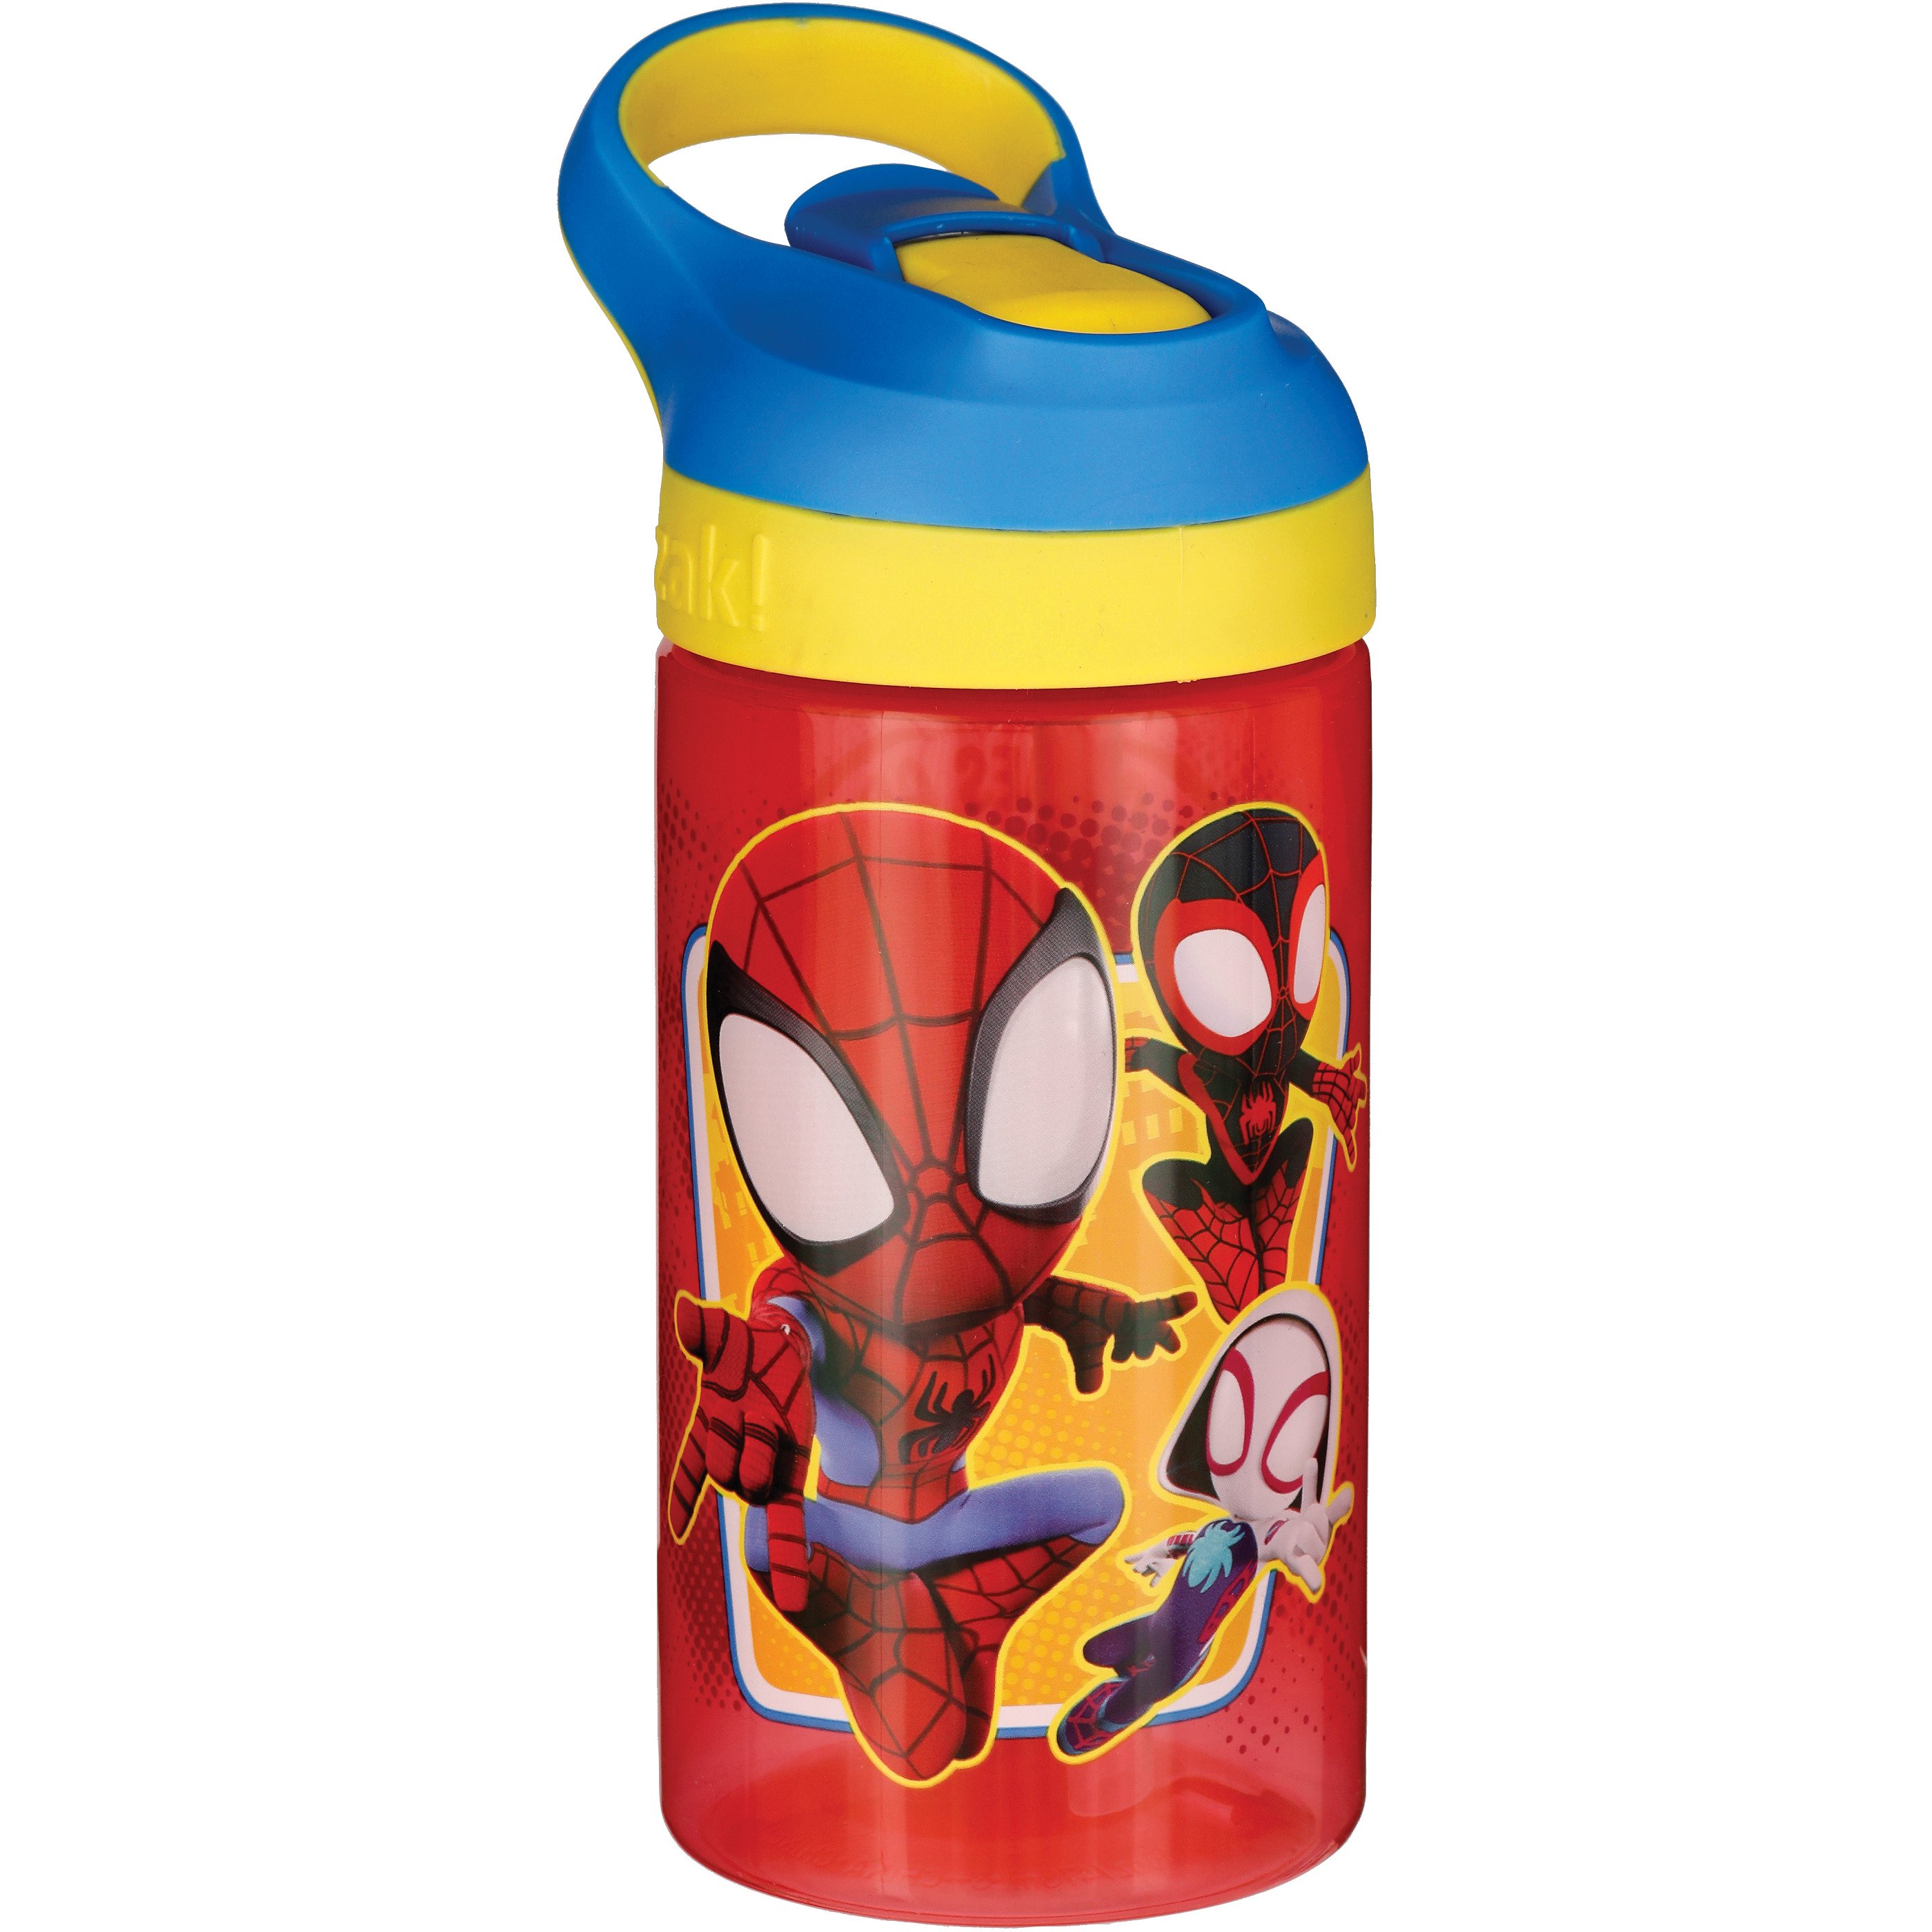 SPIDER-MAN Zak! No Leak BPA-Free 16 oz. Plastic Water Bottle Drink